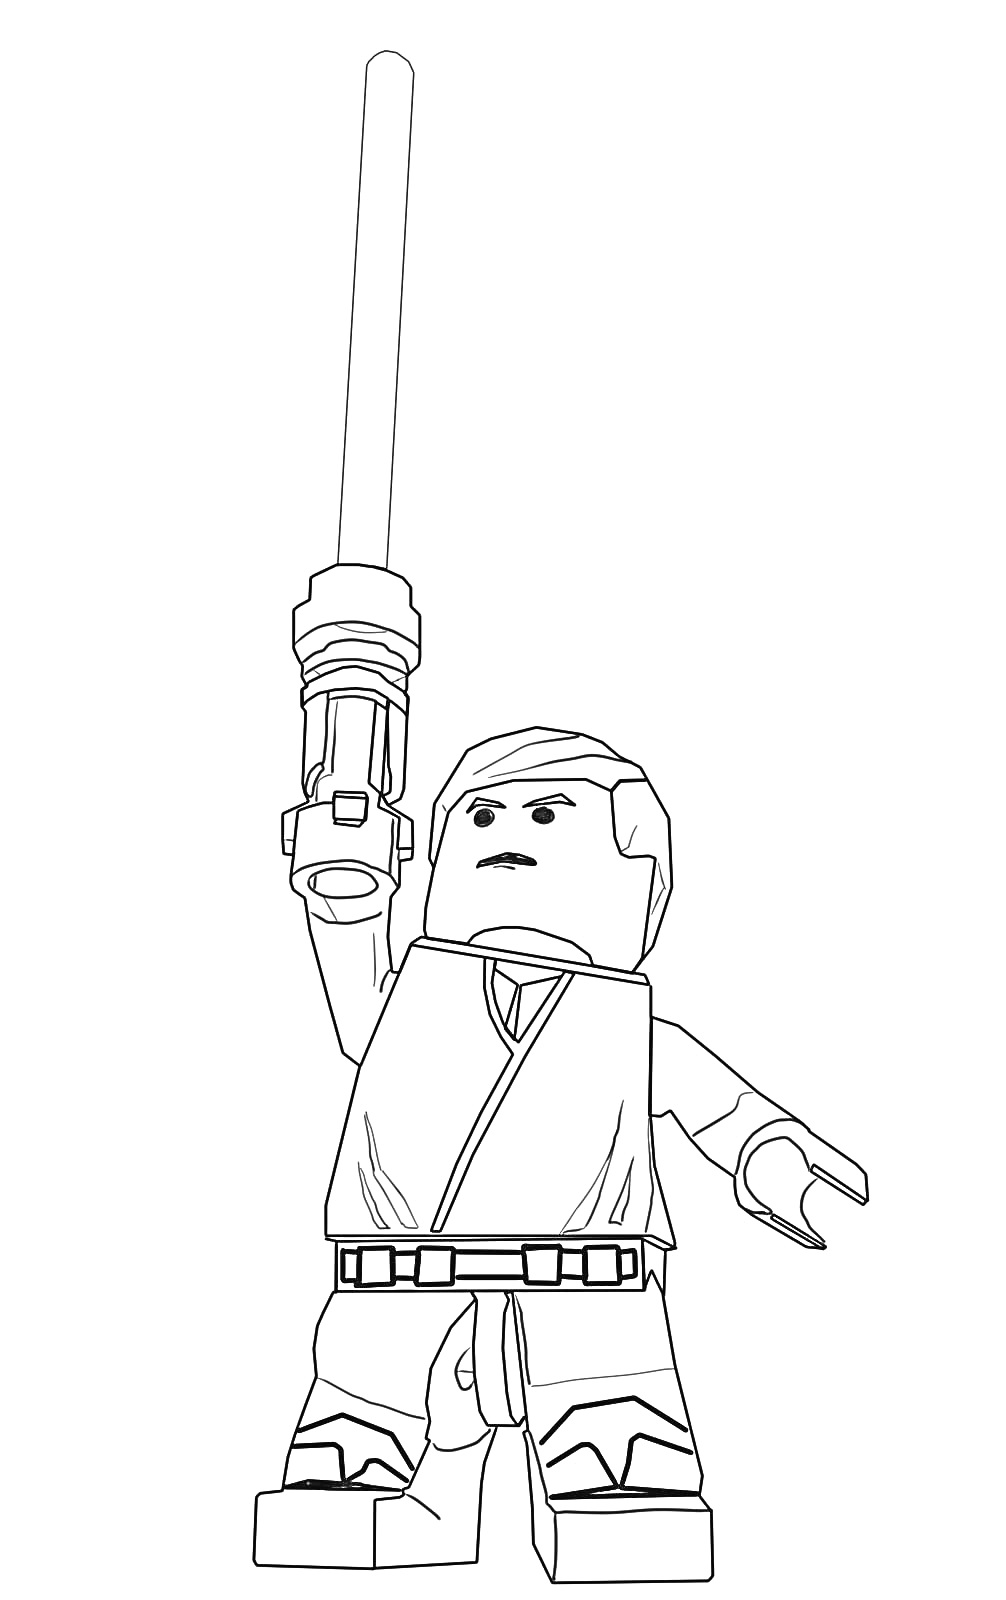 Раскраска LEGO фигурка человека с мечом в вытянутой руке